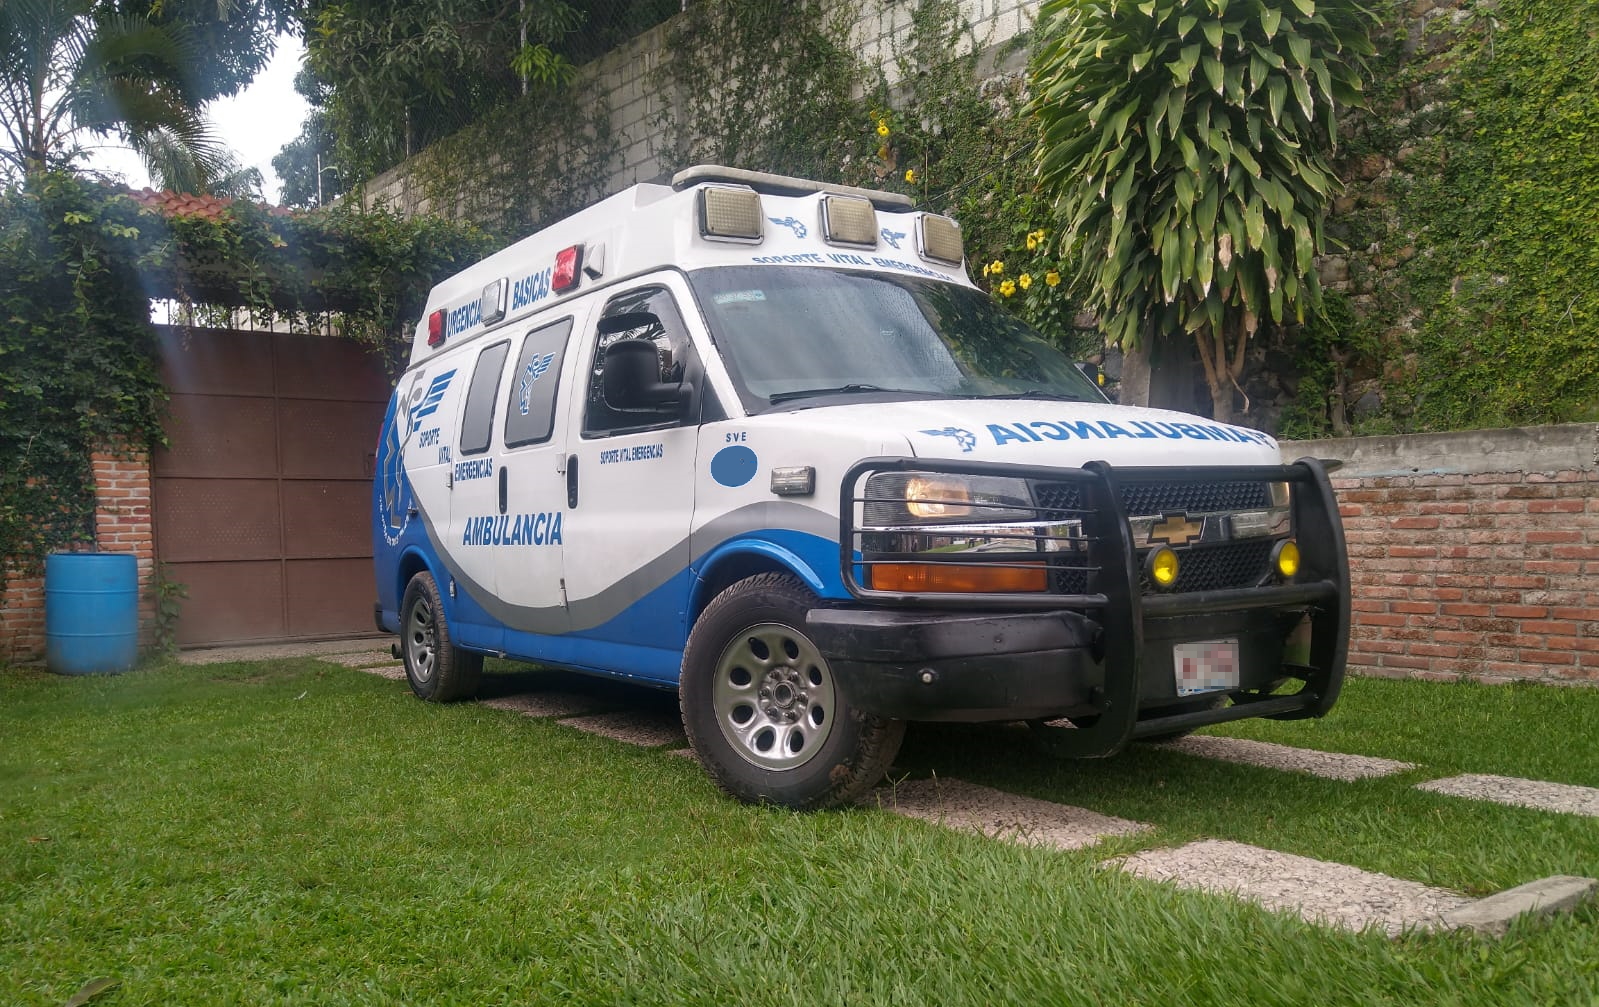 Soporte Vital Emergencias CDMX | Ambulancias 24/7 en la CDMX : Servicio de ambulancia en la Ciudad de México | 